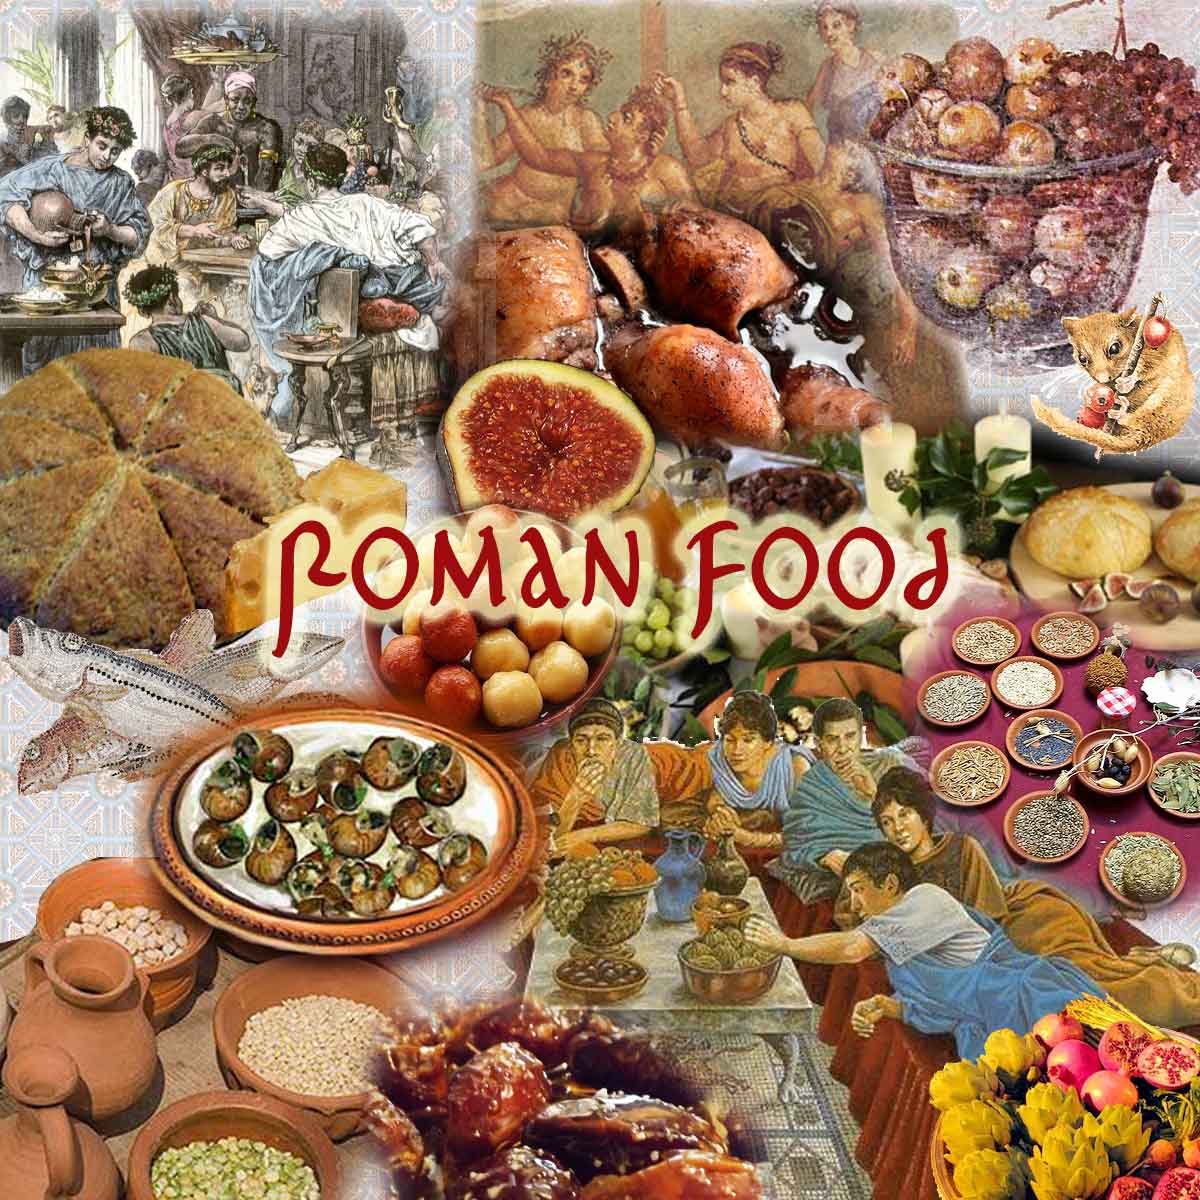 Romans in Britain - Roman Dessert Recipes: Main Page